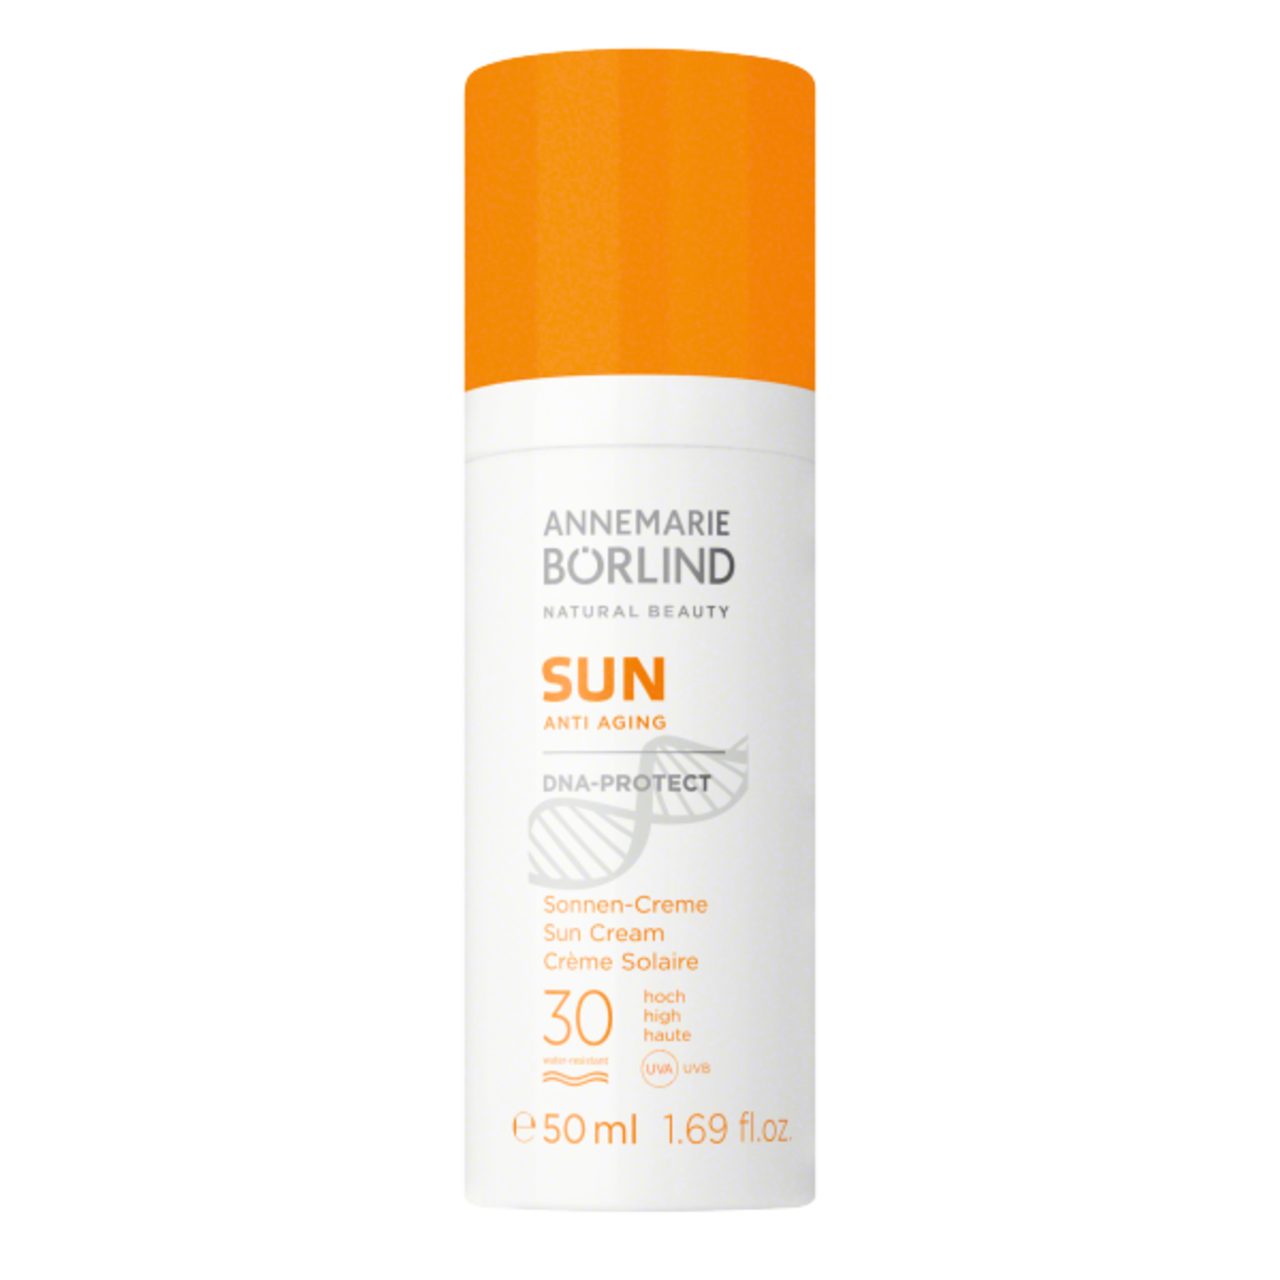 ANNEMARIE BÖRLIND Sonnenschutzcreme Sun Anti Aging DNA-Protect Sonnen-Creme SPF 30